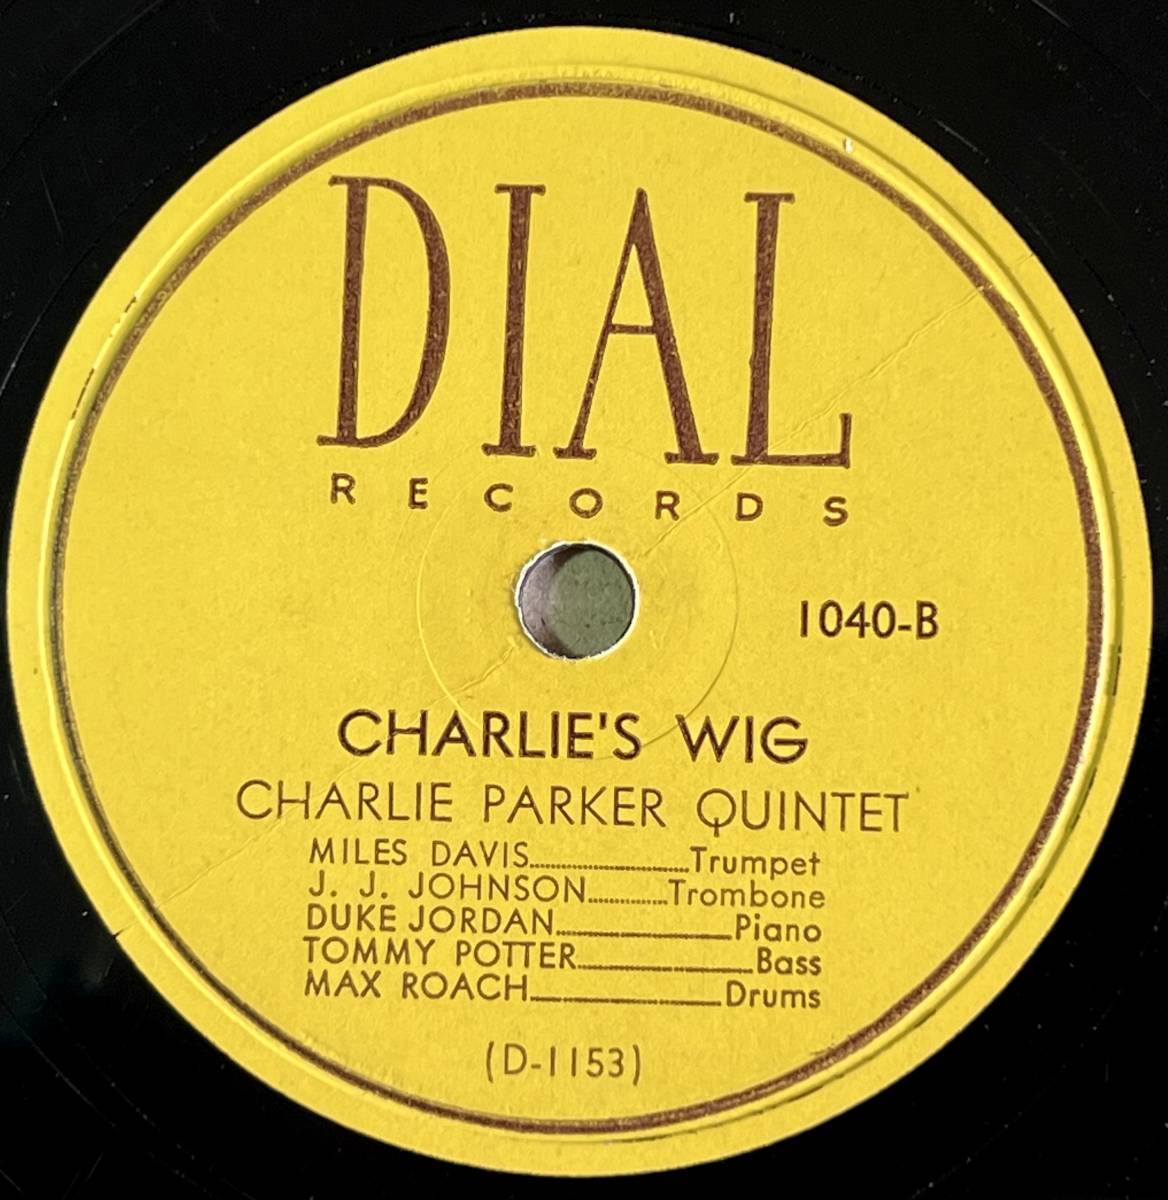 CHARLIE PARKER QUNITET DIAL Klactoveedsedstene/ Charlie’s Wig 素晴らしいサウンド!!!